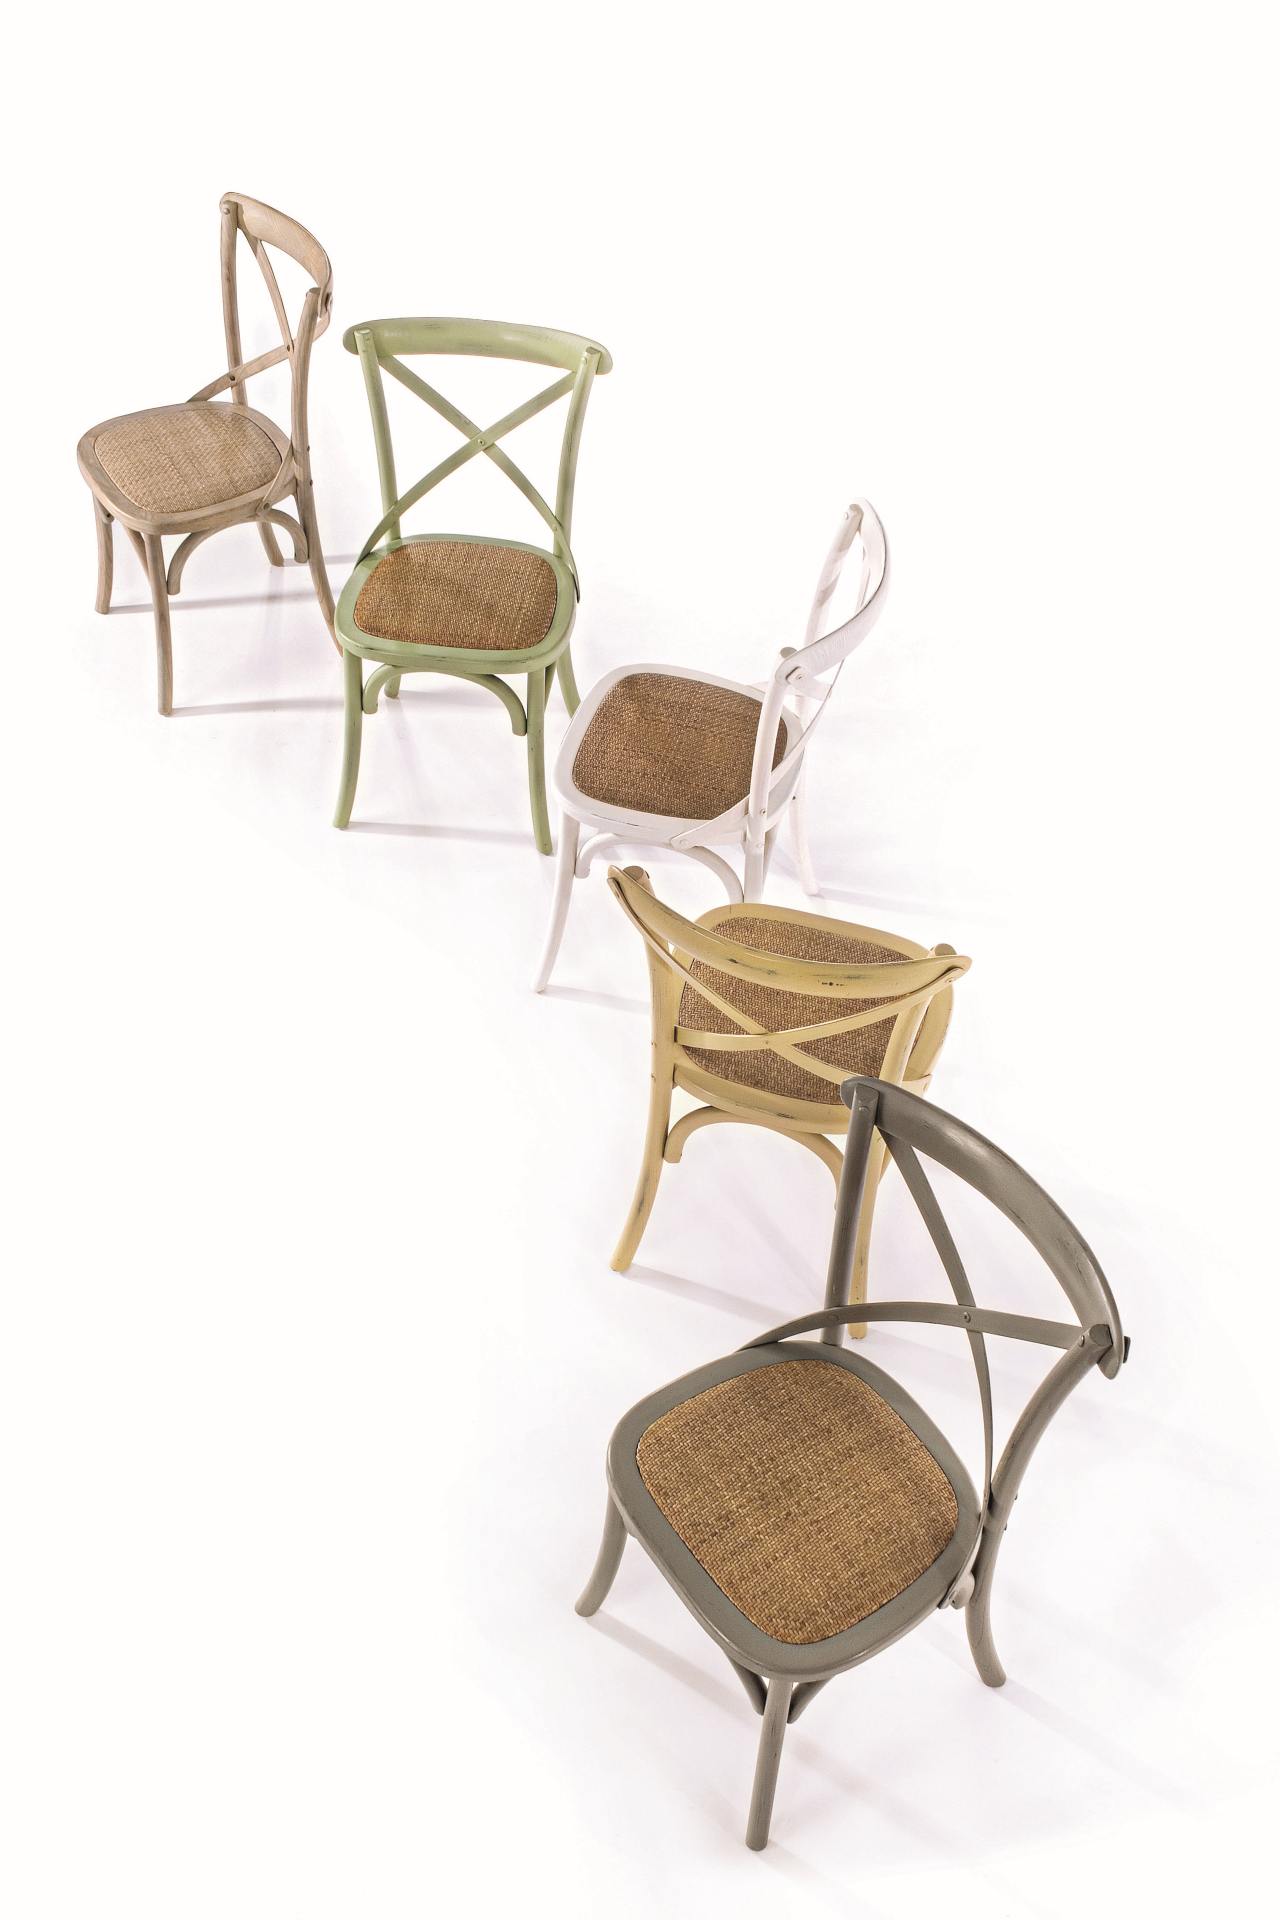 Der Stuhl Cross überzeugt mit seinem klassischen Design. Gefertigt wurde der Stuhl aus Ulmenholz, welches einen gelben Farbton besitzt. Die Sitz- und Rückenfläche ist aus Rattan gefertigt. Die Sitzhöhe beträgt 46 cm.